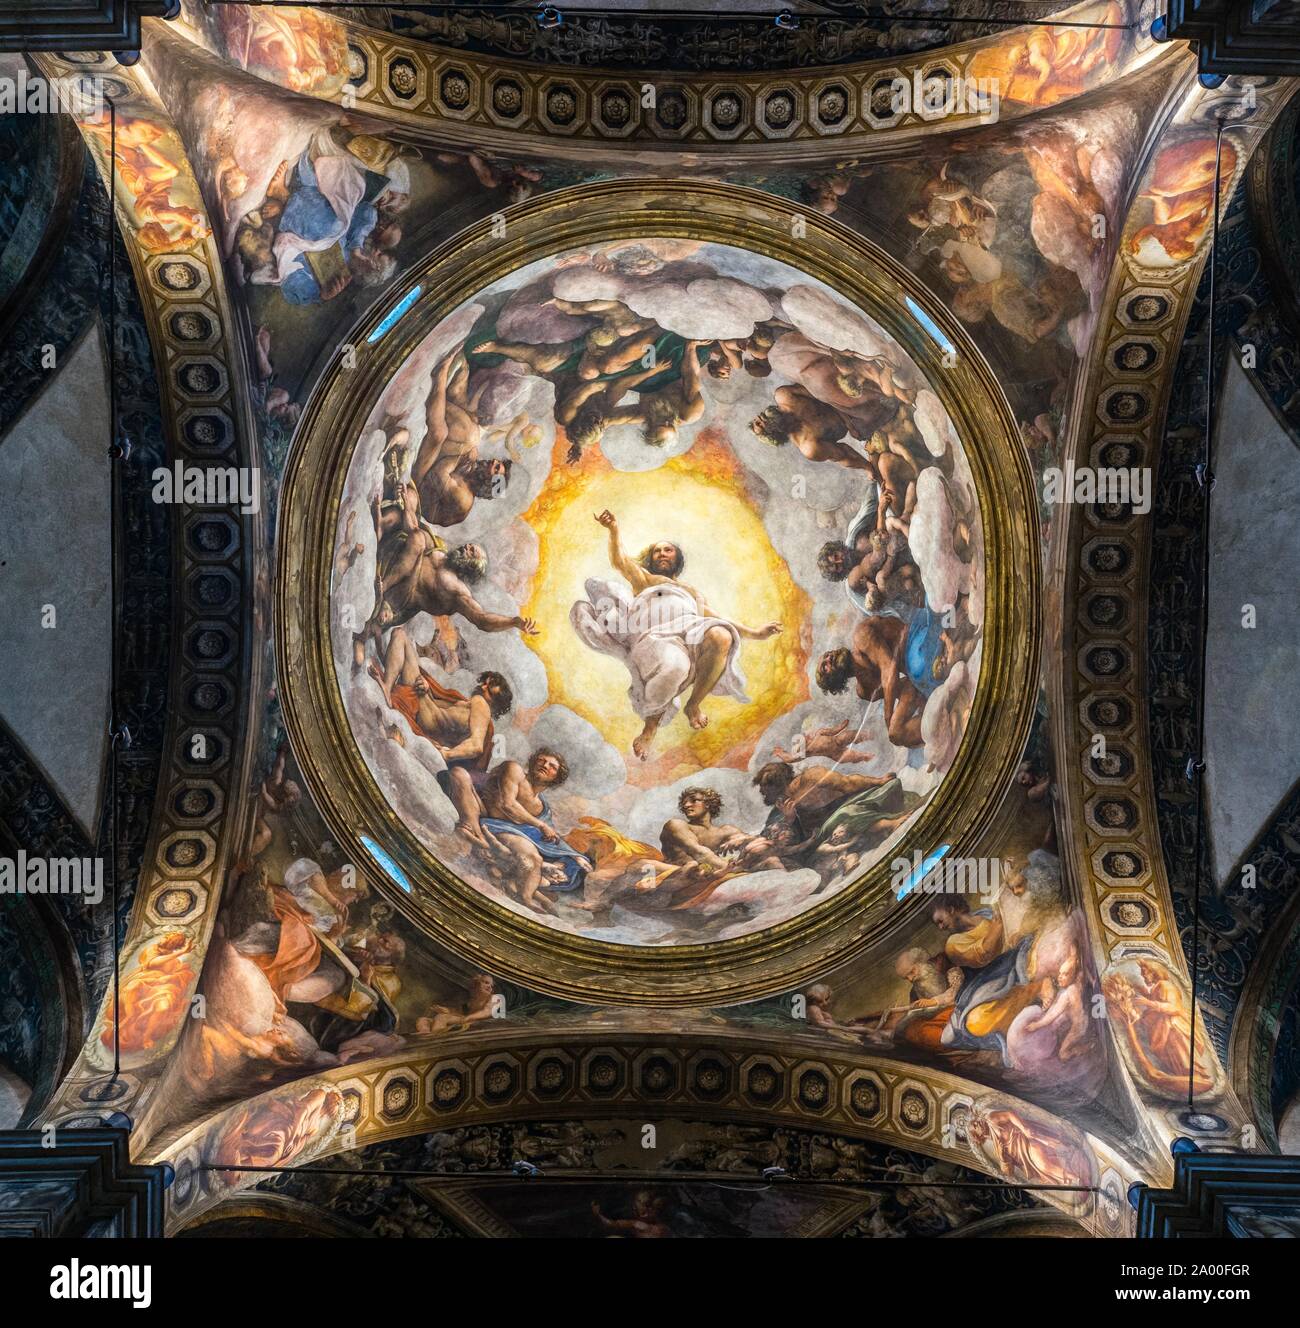 Fresque au plafond, la vision de saint Jean à Patmos, monastère de San Giovanni Evangelista, Parme, Emilie-Romagne, Italie Banque D'Images